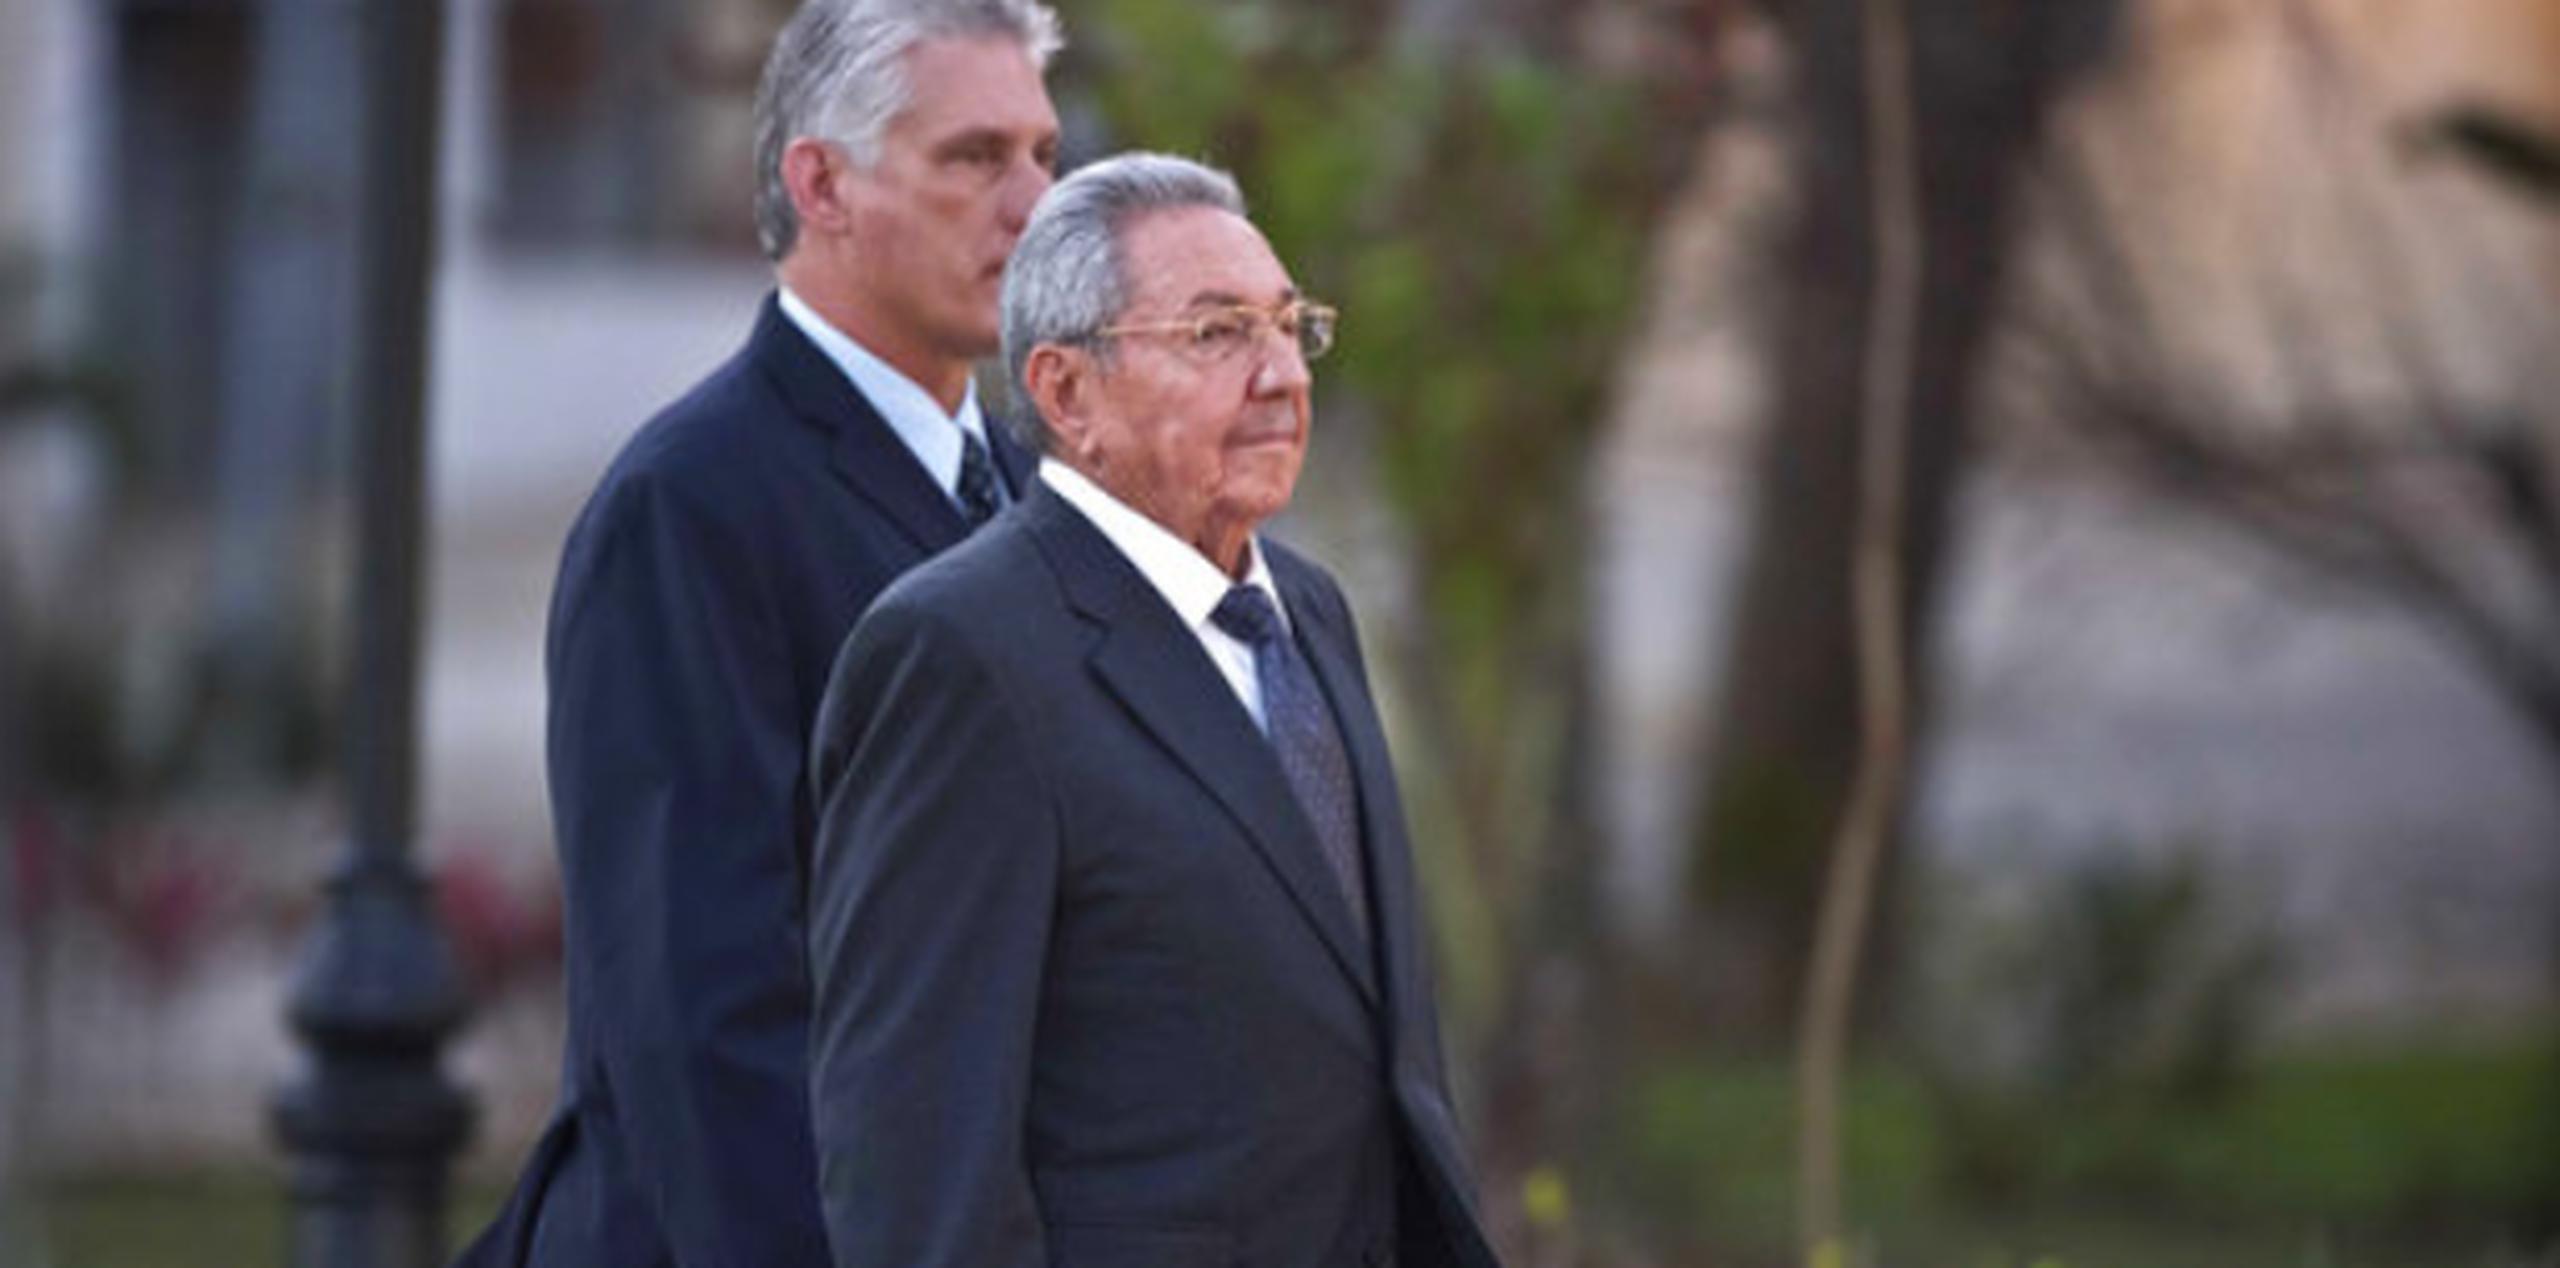 Raúl Castro, de 86 años, dejará la presidencia del país el próximo abril y pasará el testigo del poder a una nueva generación. (AP)